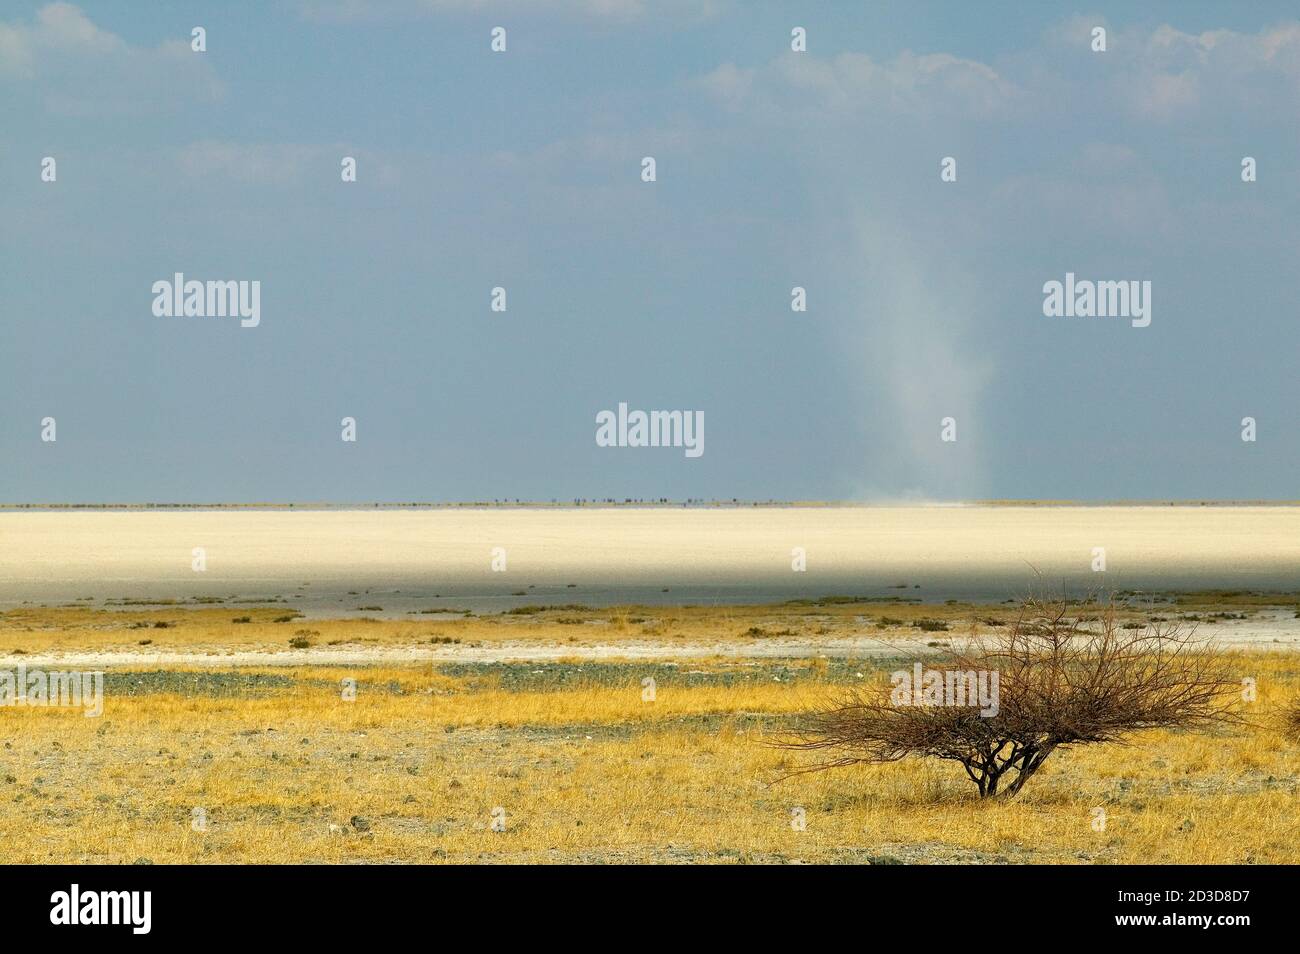 View across the Makadikadi Salt Pans in Botswana. Stock Photo